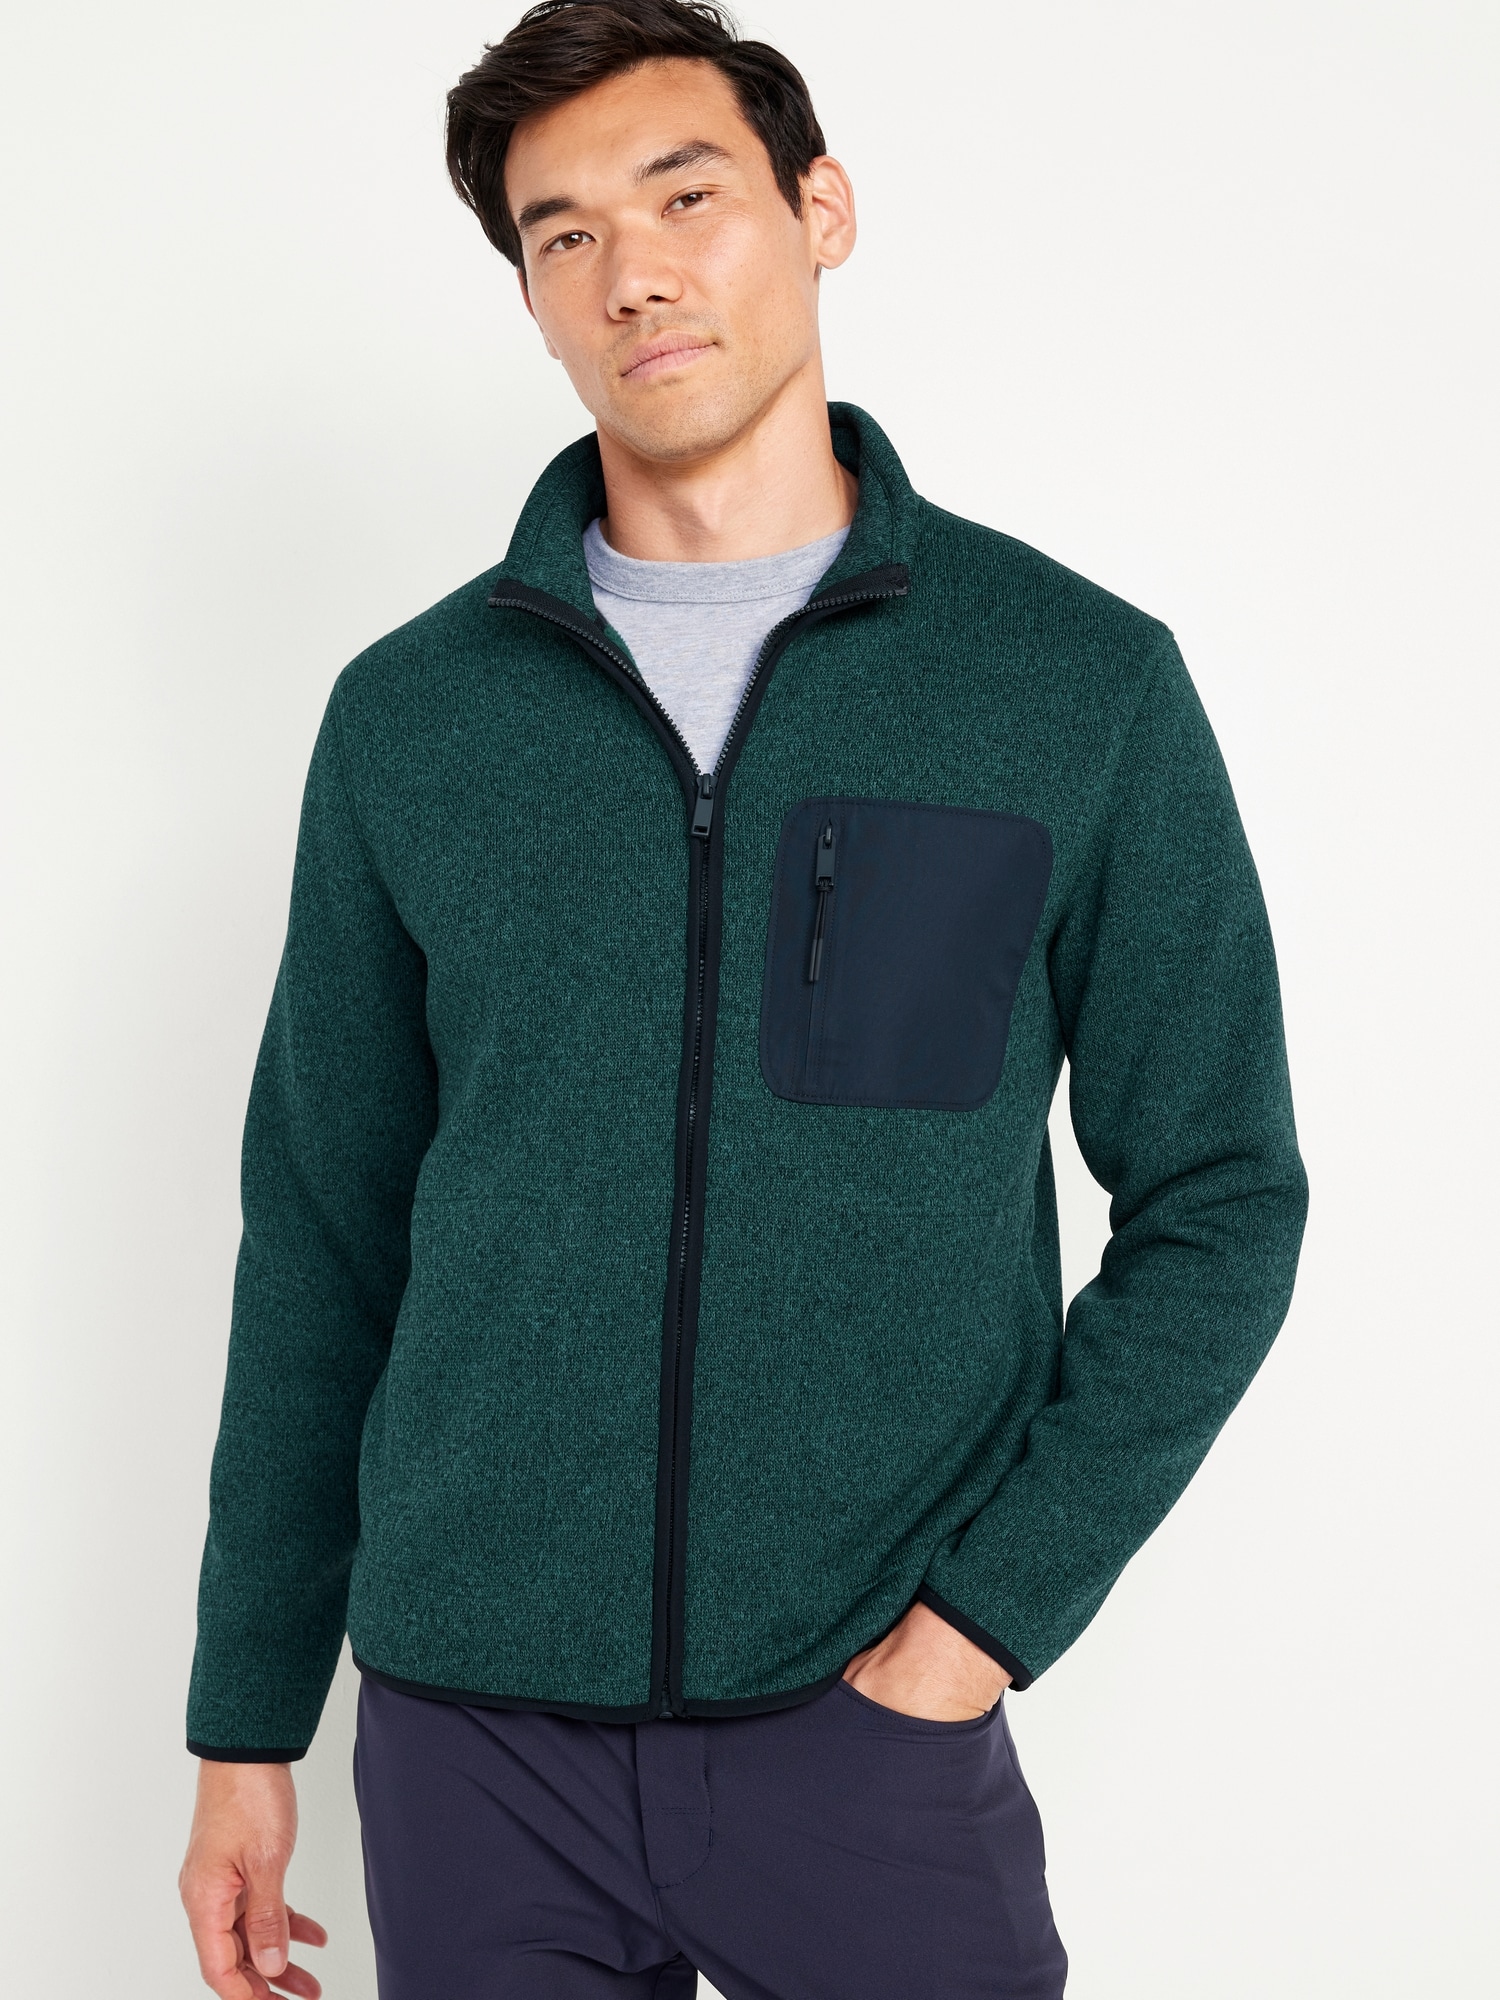 Fleece-Knit Sherpa-Lined Zip Jacket